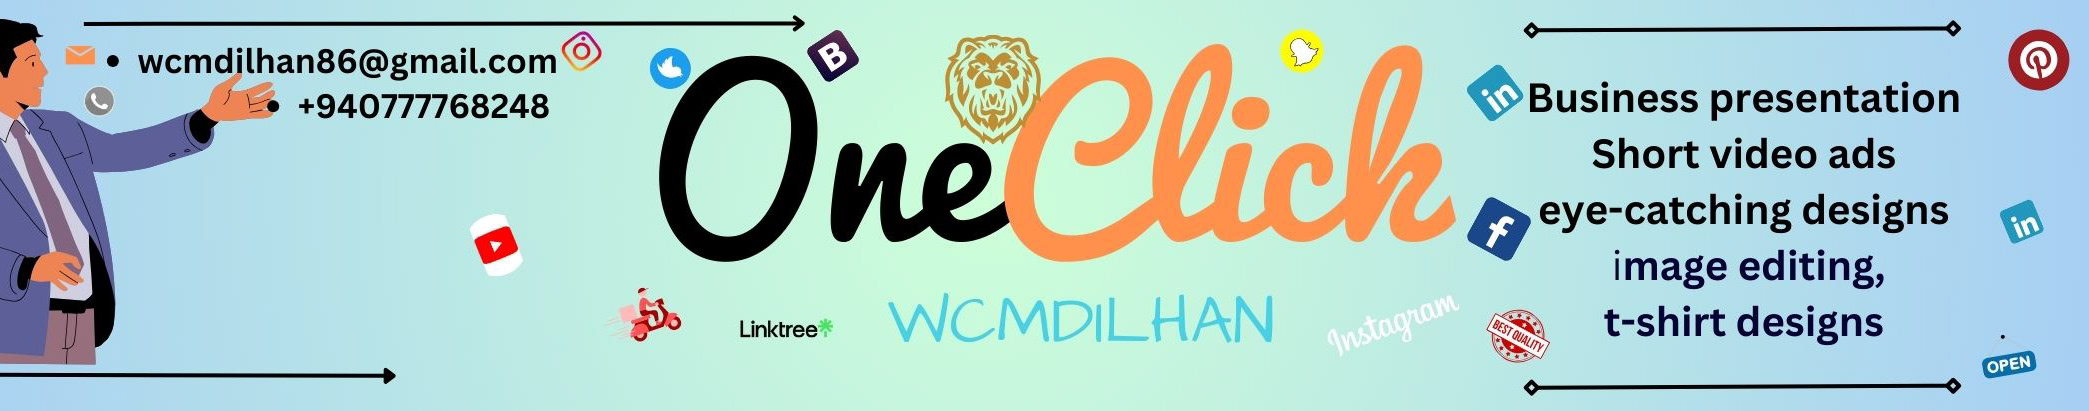 Banner de perfil de Oneclick Wcmdilhan